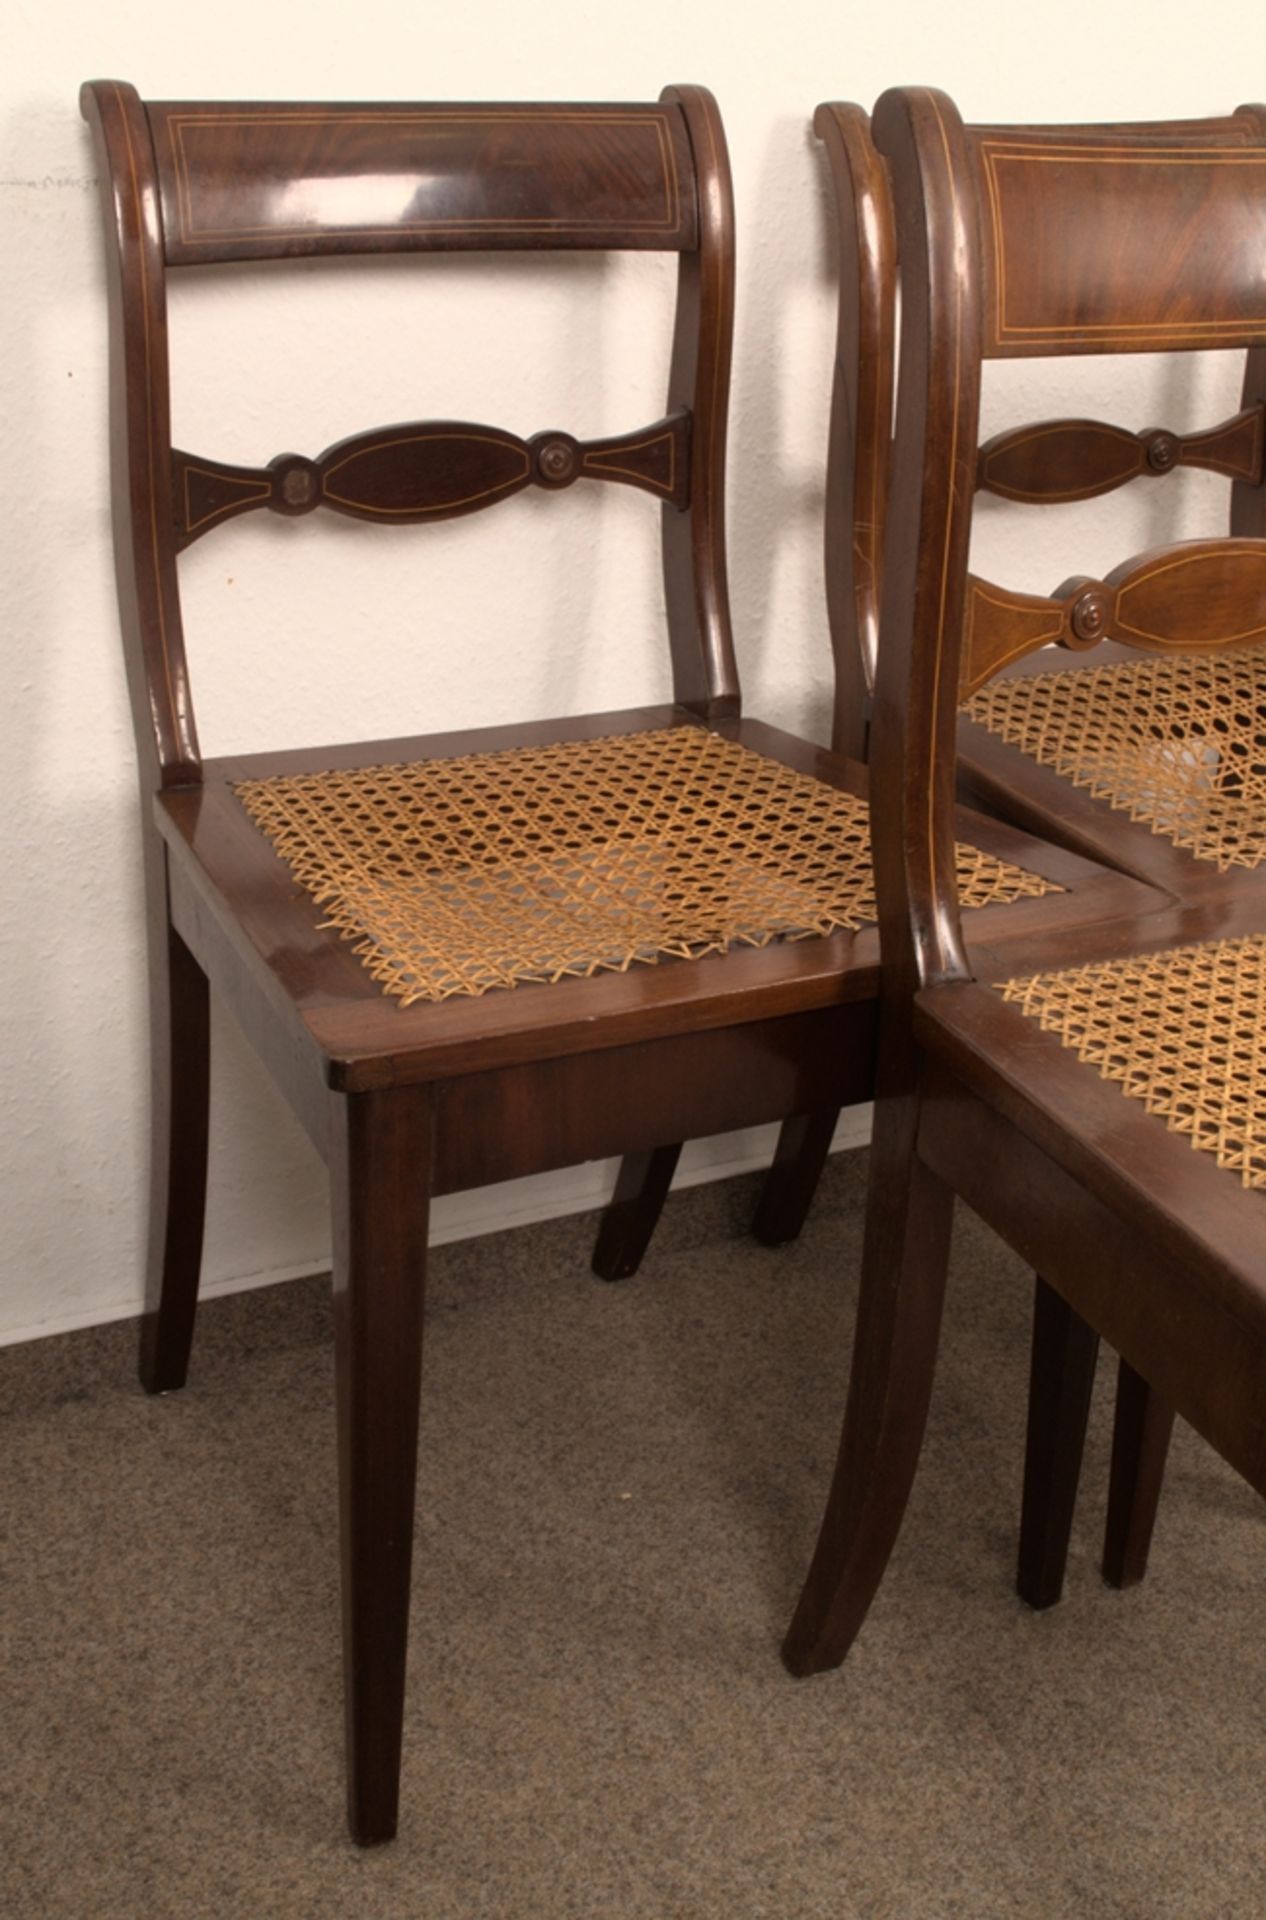 Folge / Satz von 5 eleganten Biedermeier-Stühlen, Mahagoni, Fadeneinlagen, ältere Restauration, - Bild 5 aus 15